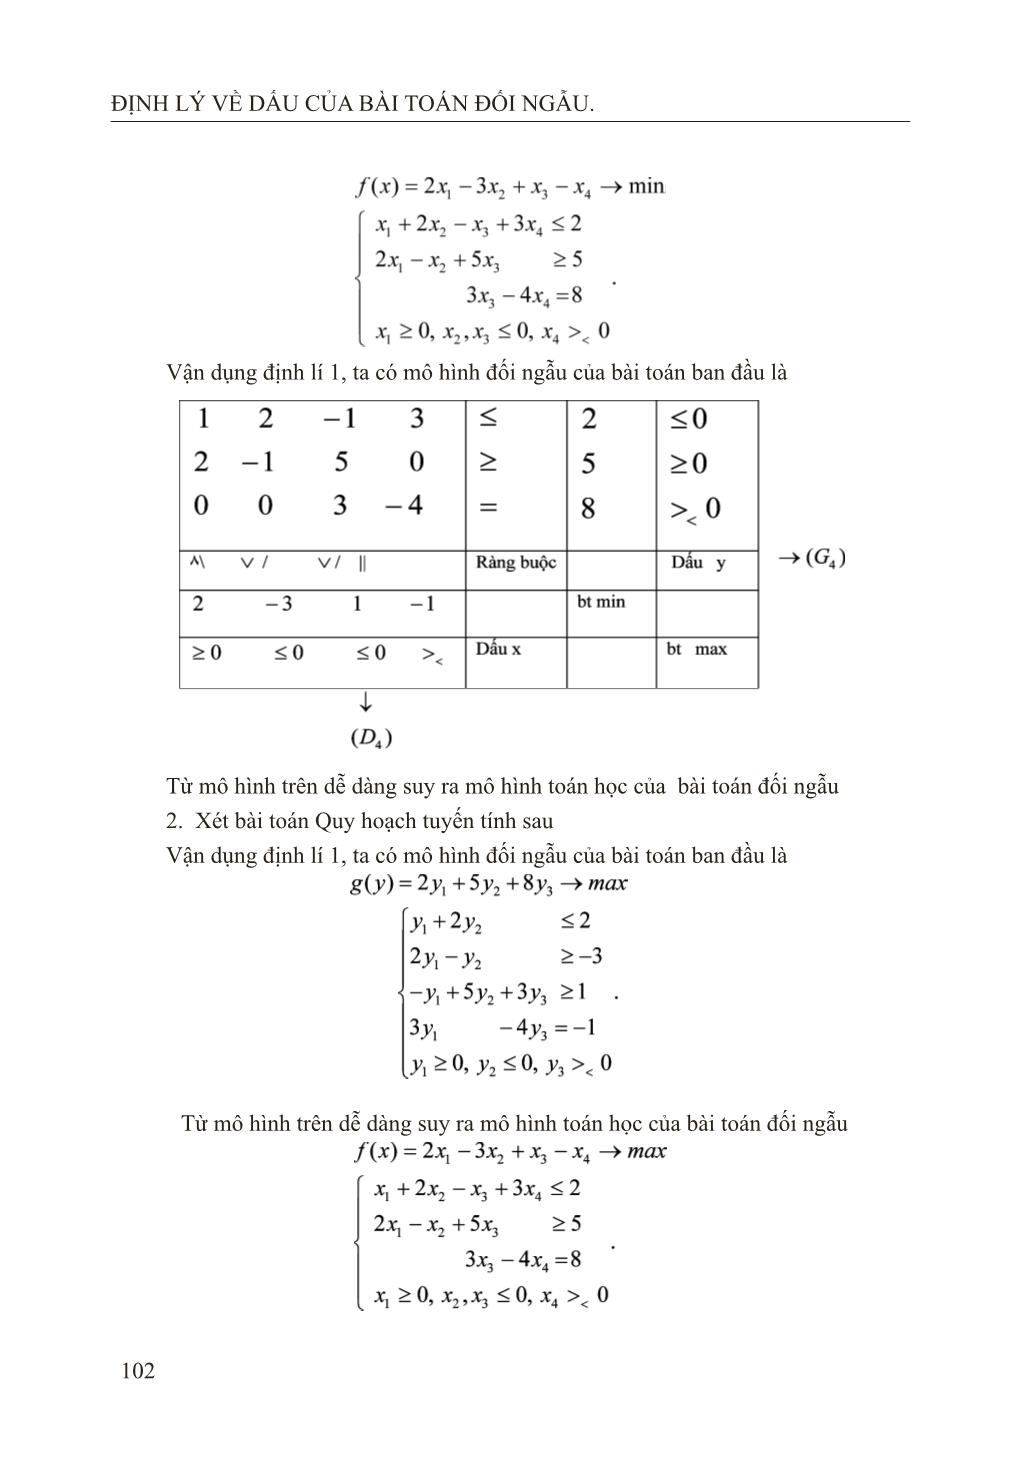 Định lý về dấu của bài toán đối ngẫu trang 6